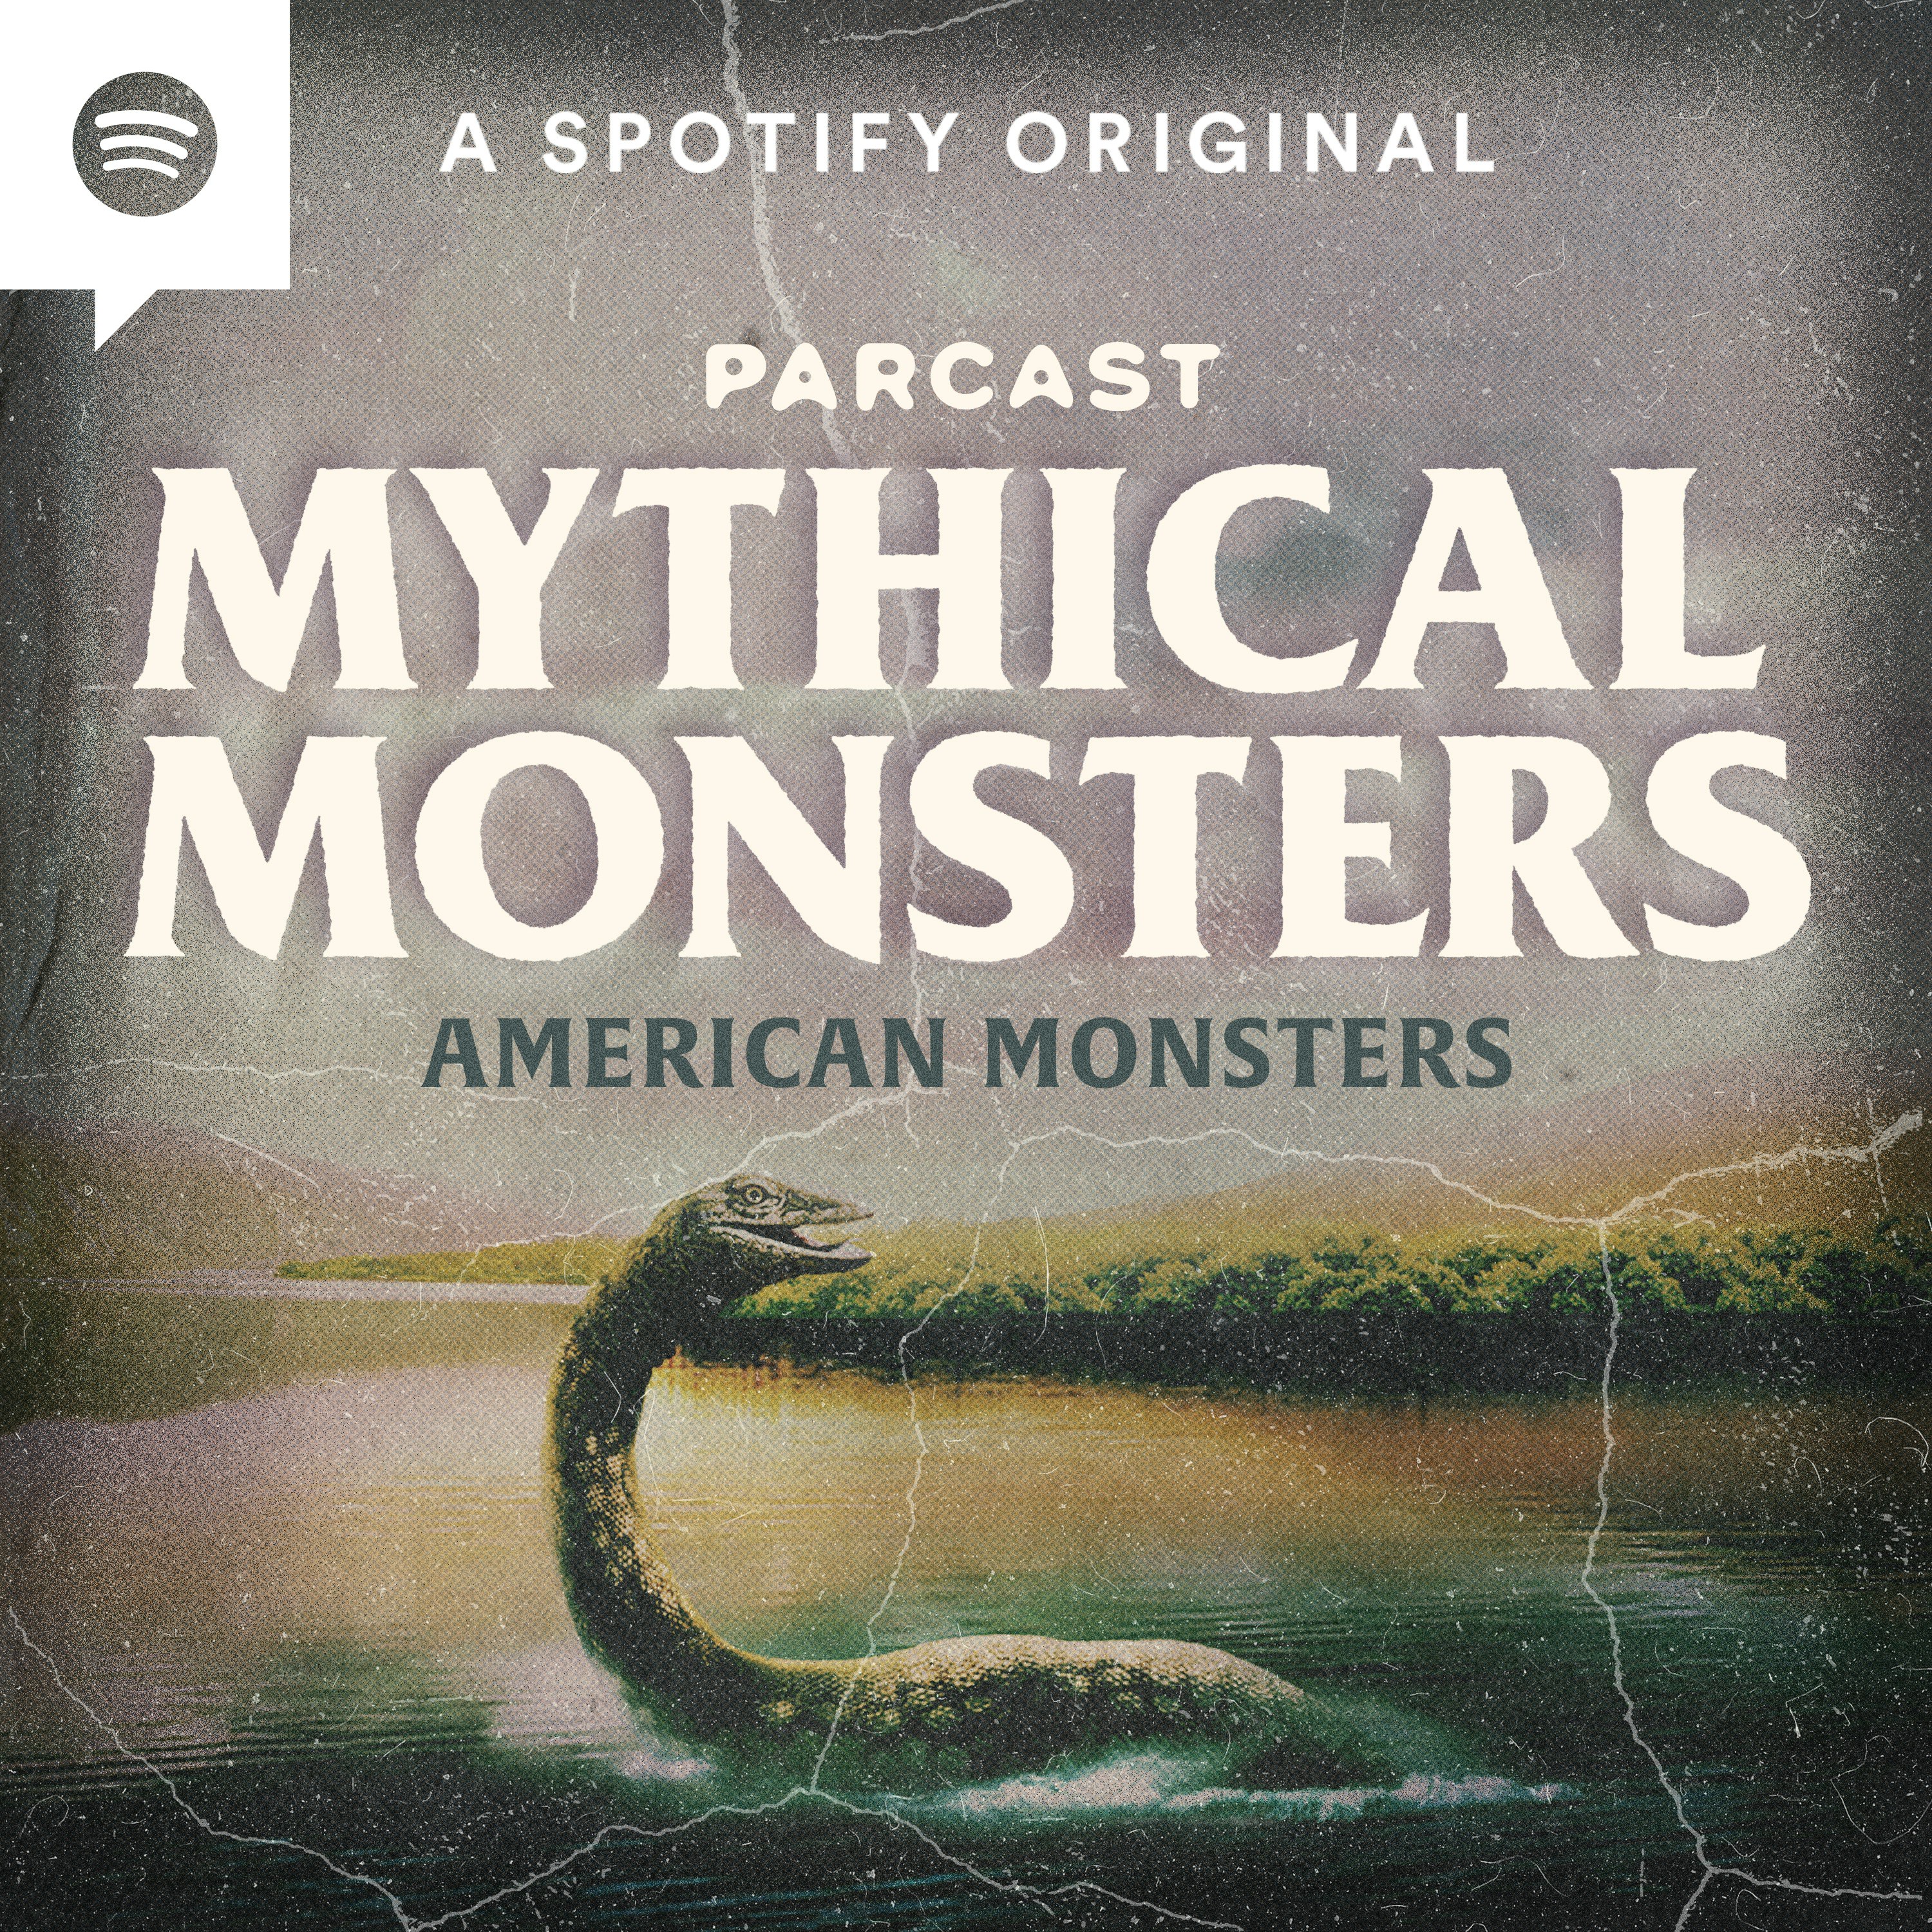 American Monsters: Mothman